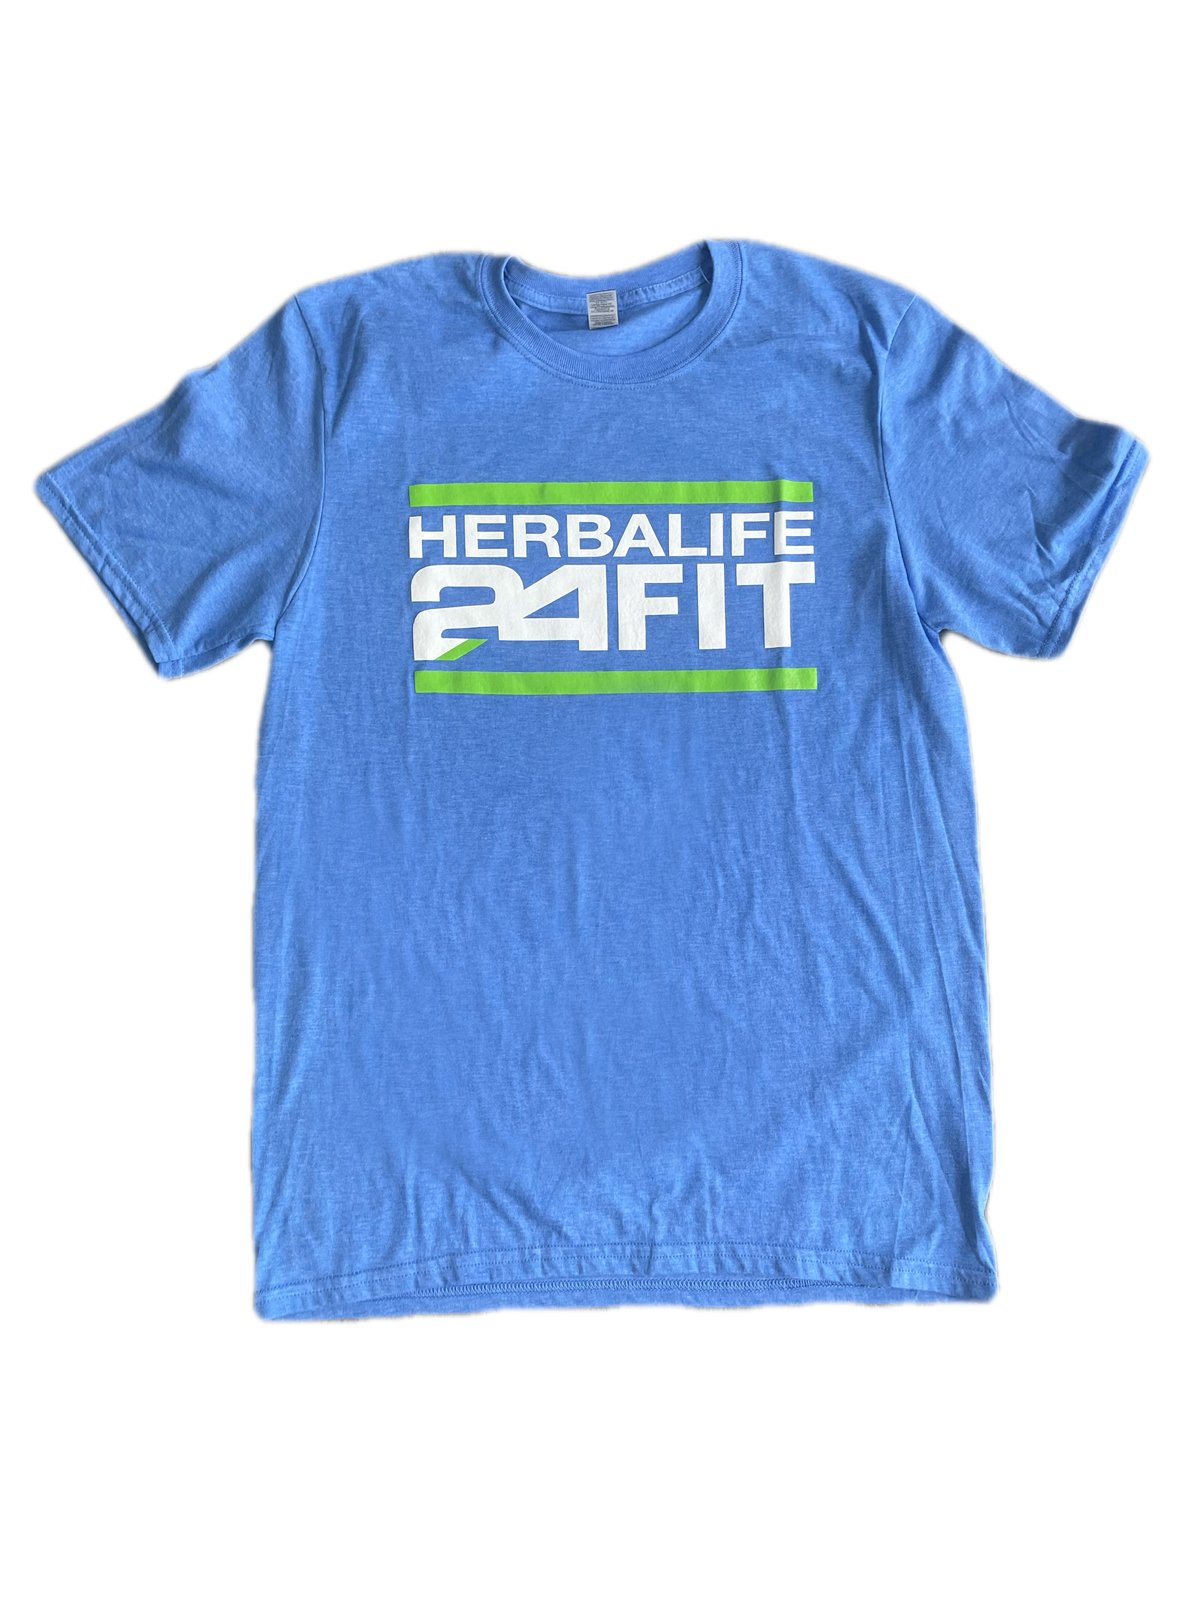 Image of Herbalife 24 fit cobalt blue 